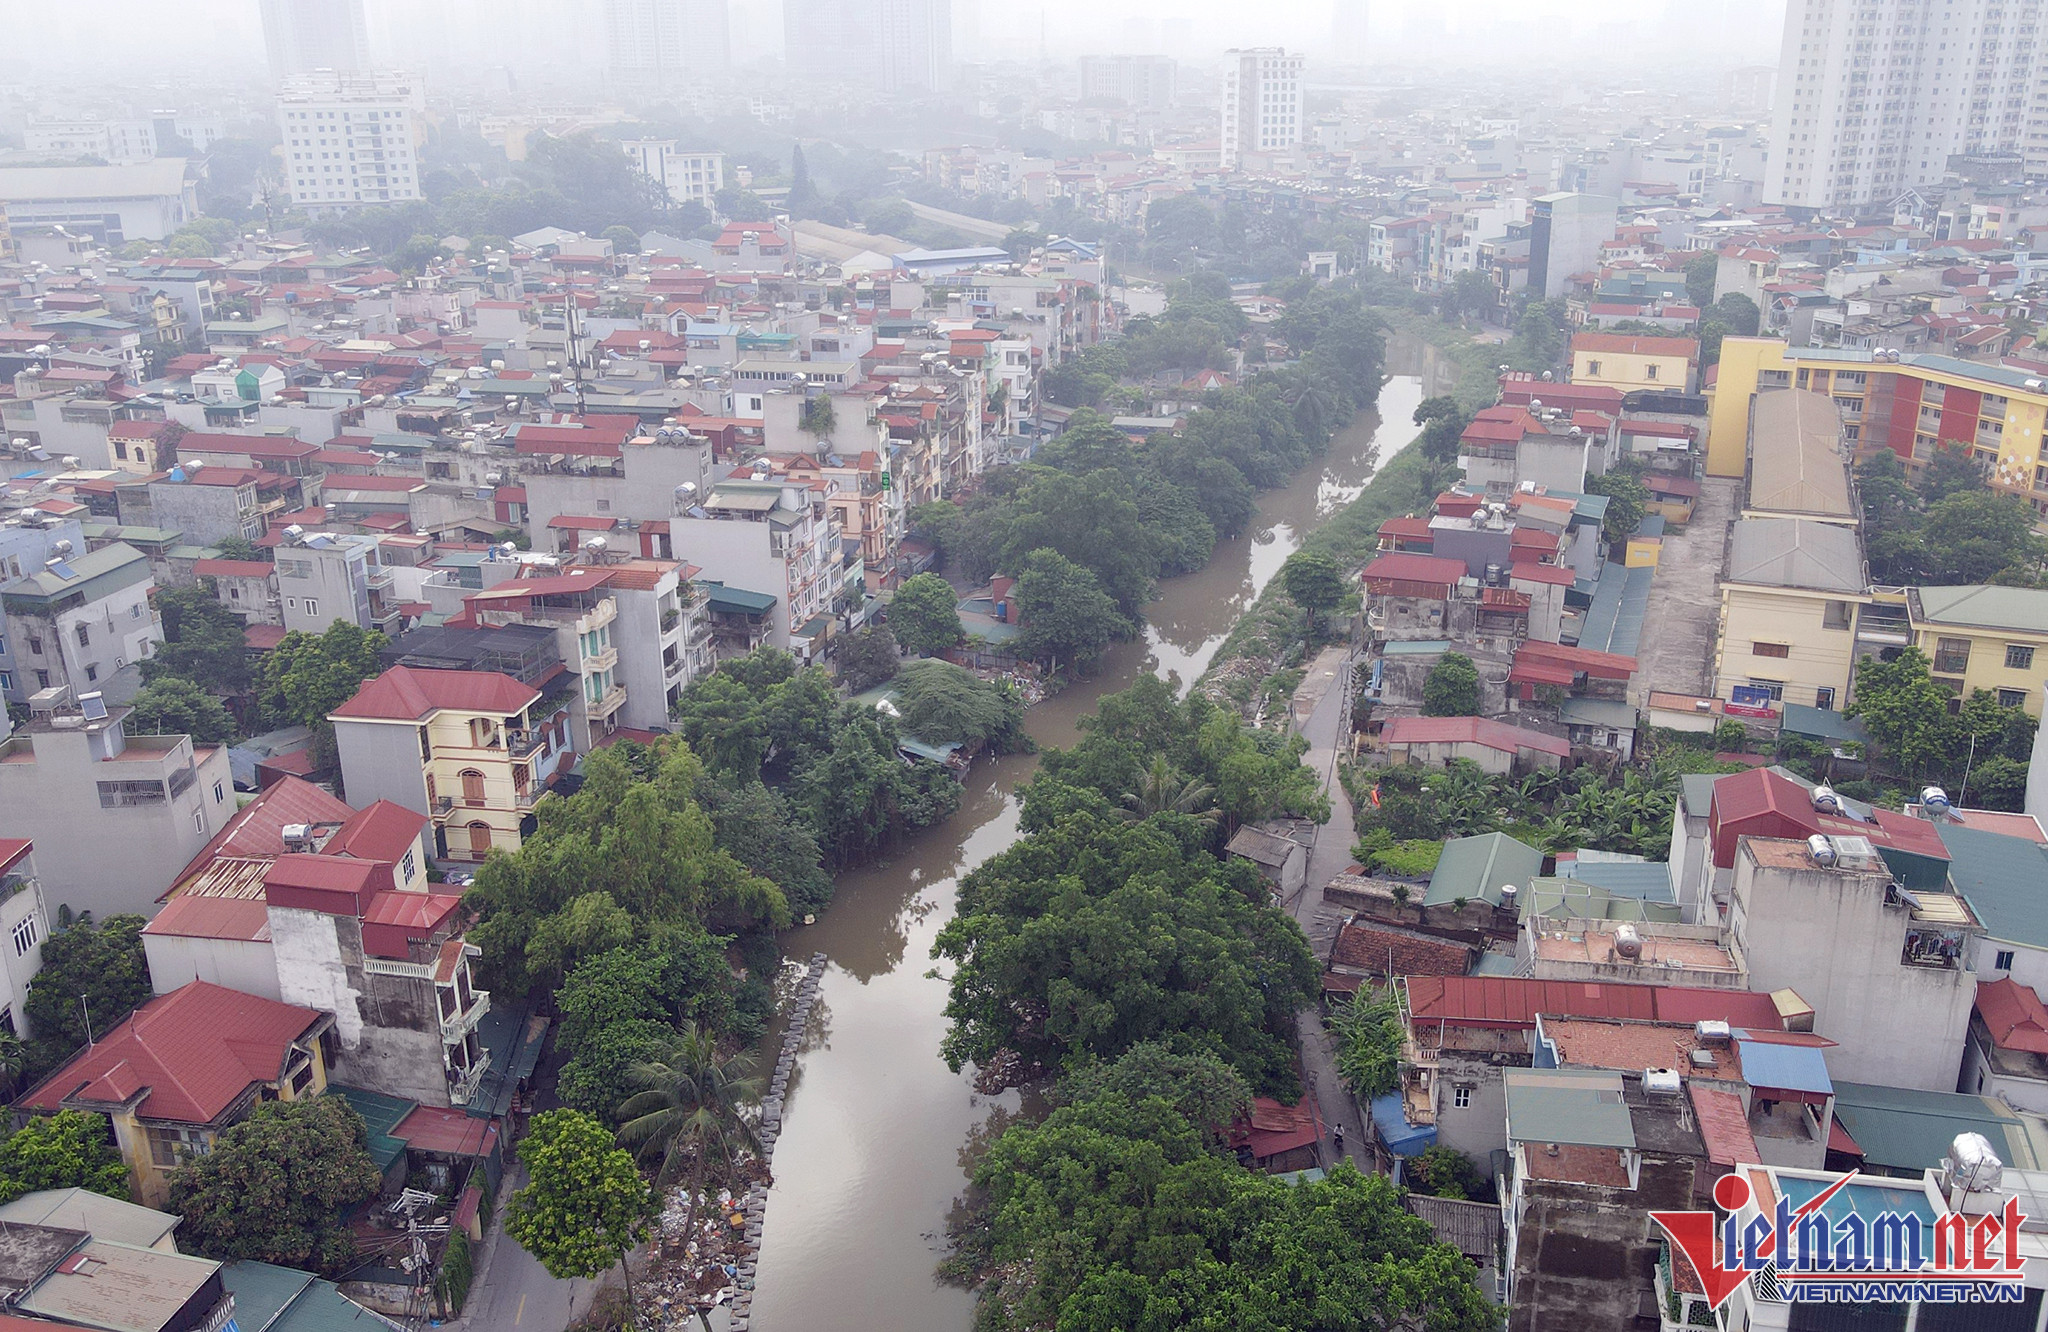 Giám đốc Sở Nông nghiệp và Phát triển nông thôn Hà Nội Chu Phú Mỹ cho biết, dự án xây dựng kênh La Khê bị tạm dừng thi công từ cuối năm 2019 đến nay, ảnh hưởng đến công tác tiêu thoát nước của hệ thống.
